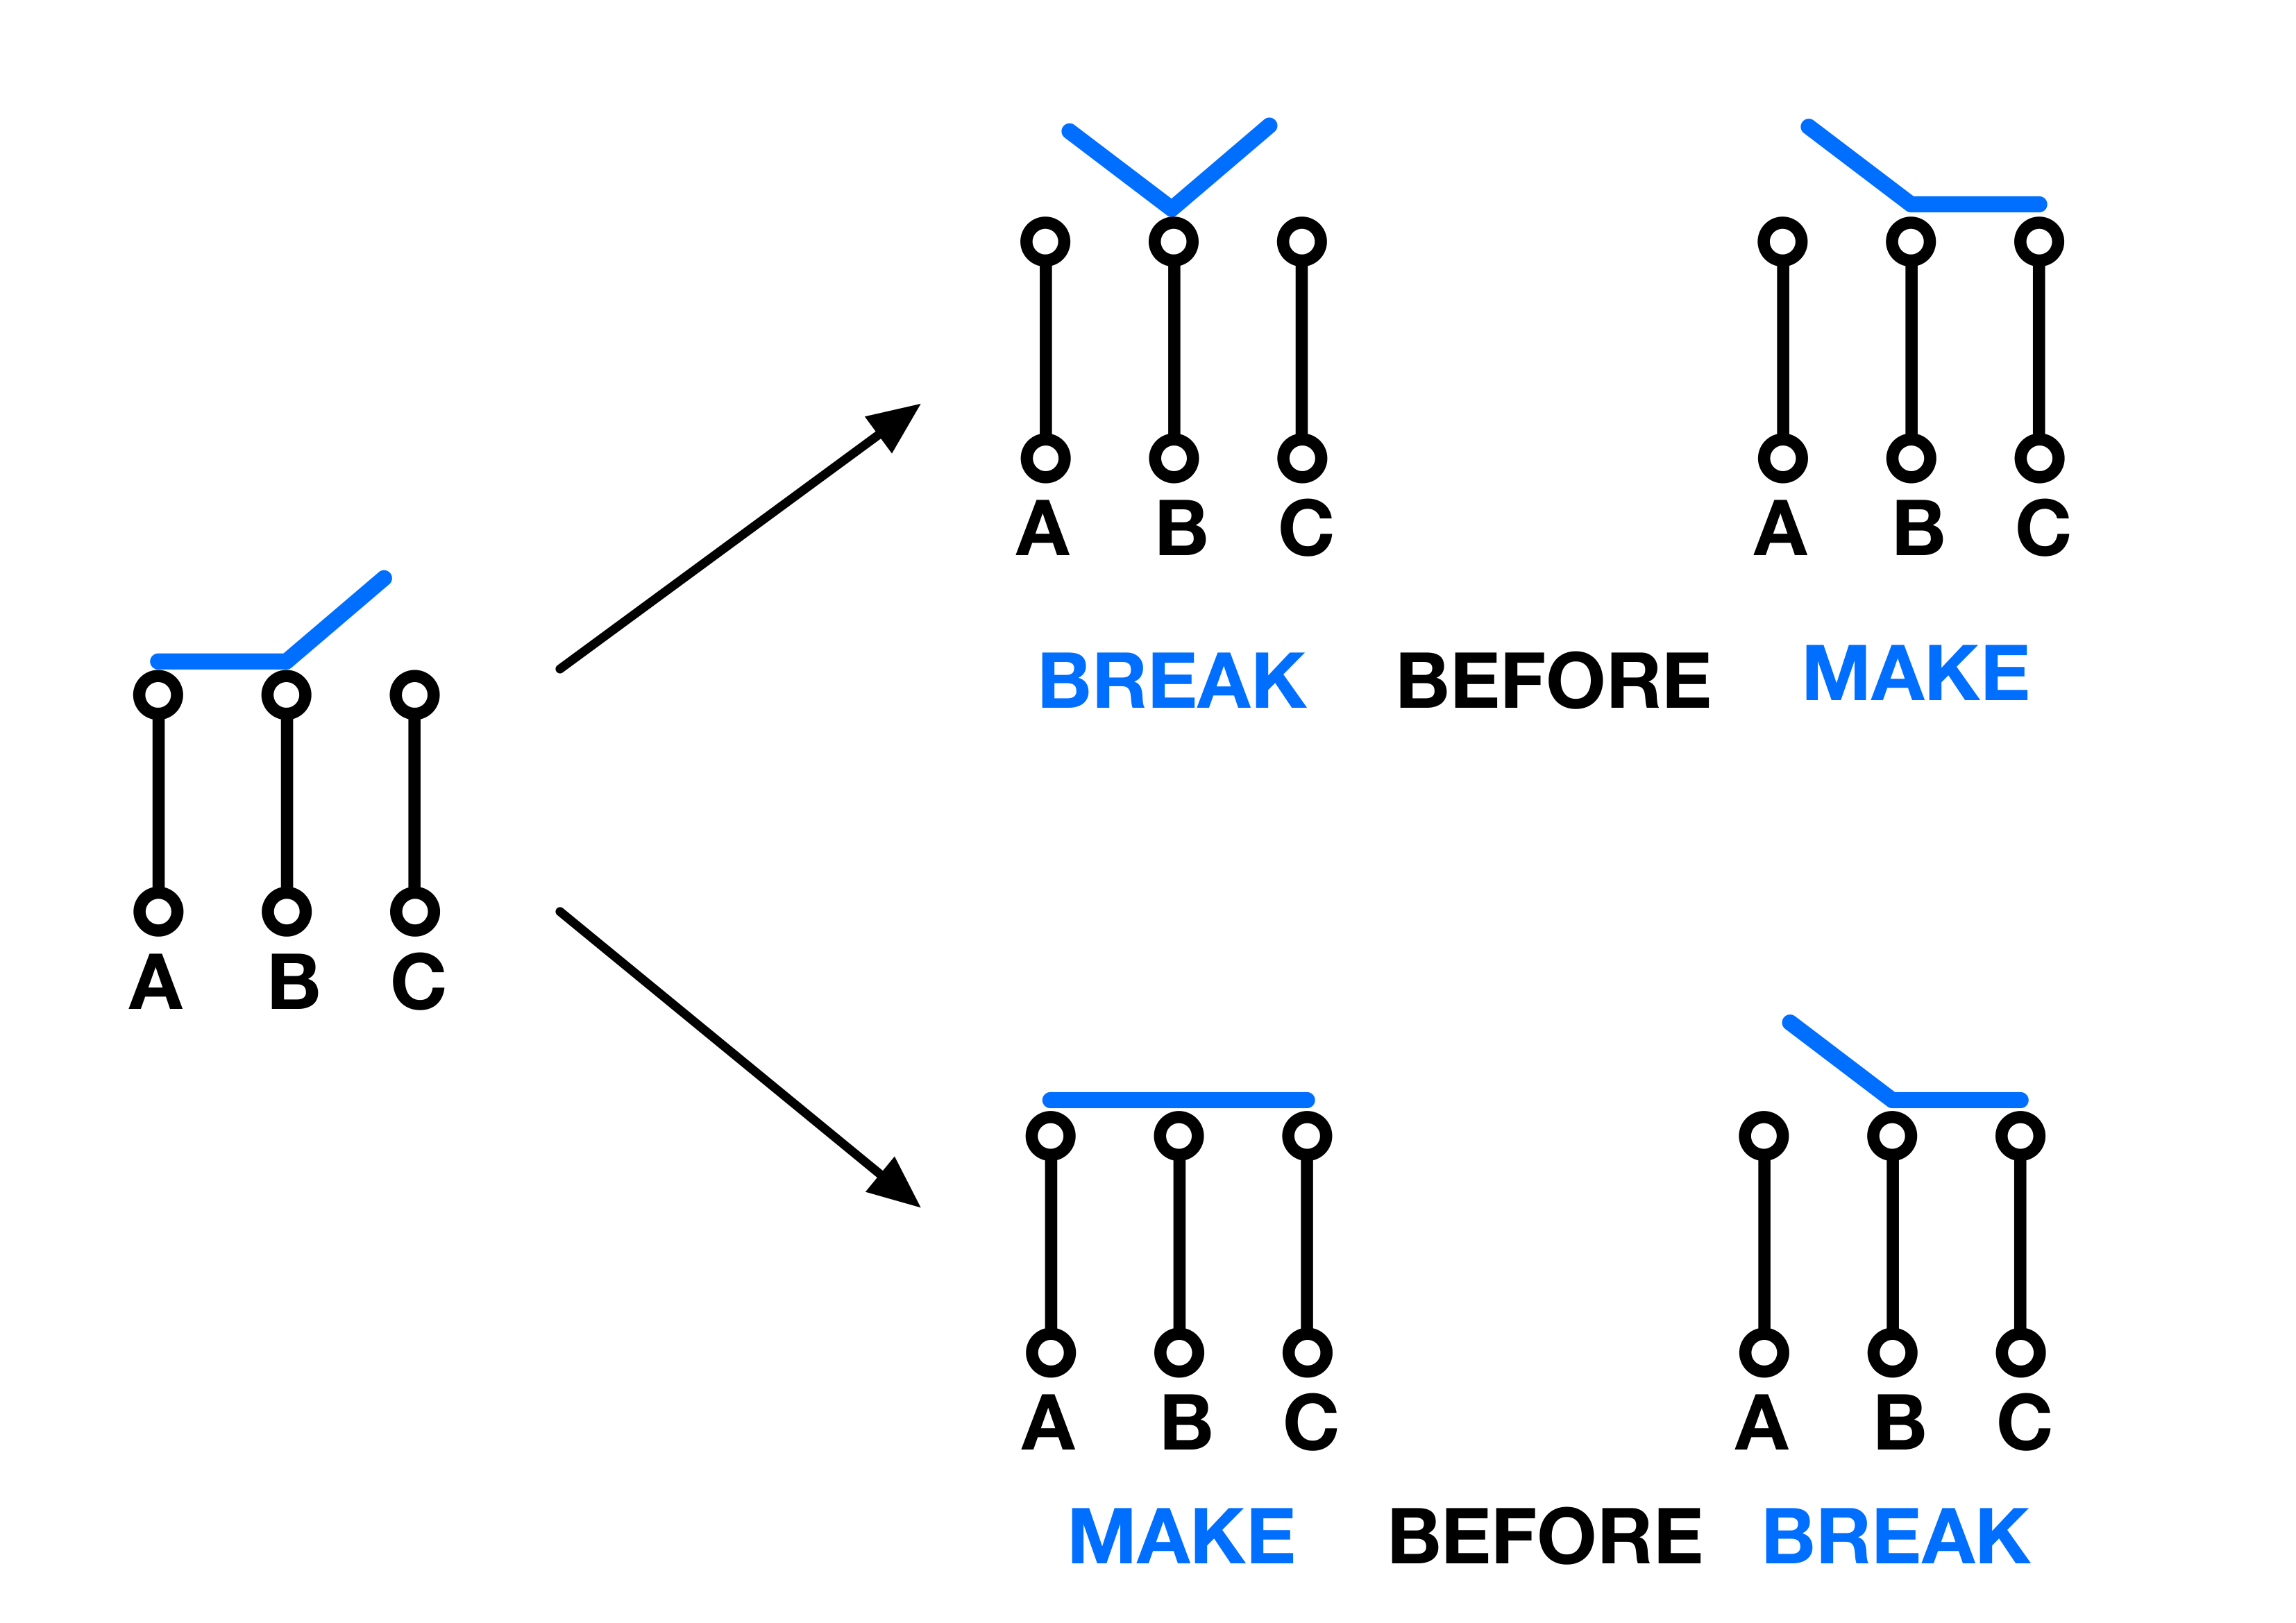 Figure 11: Make Before Break and Break Before Make Switches